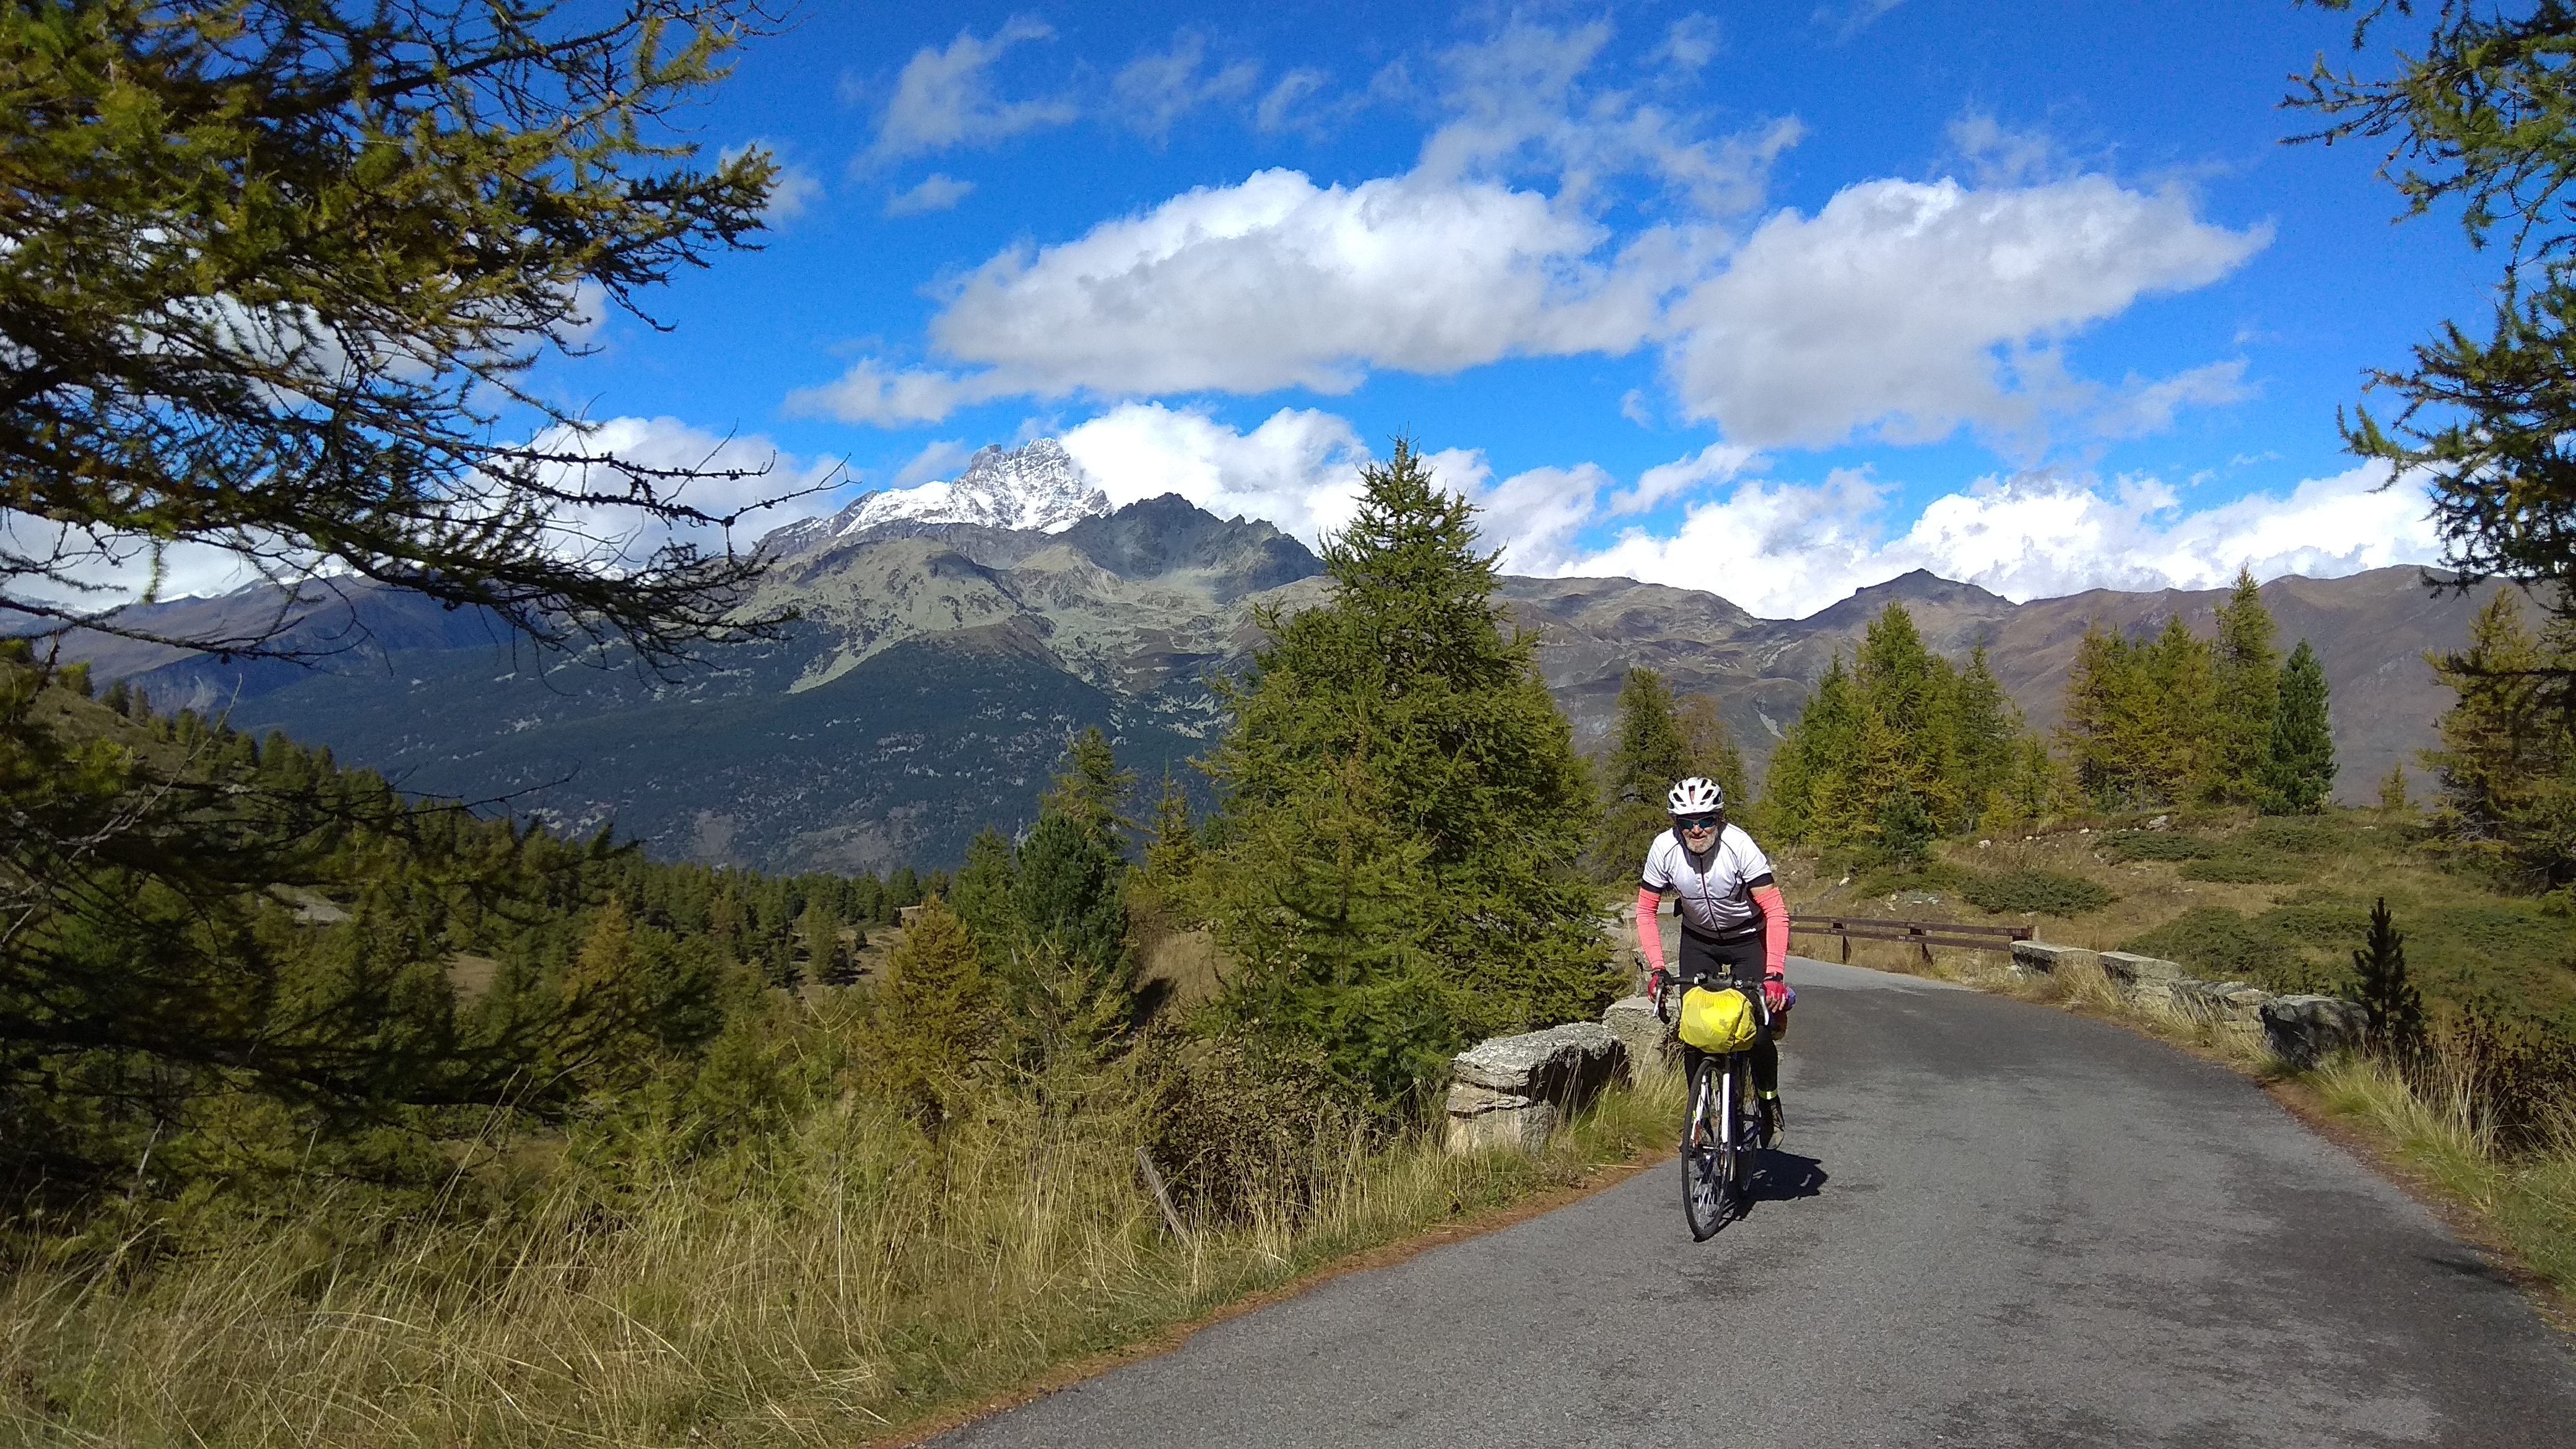 Колле ди Сампейре, 3841 м Монвизо на заднем плане, Ищу попутчицу для совместных пеших или велосипедных походов в возрасте от 40 до 65 лет.